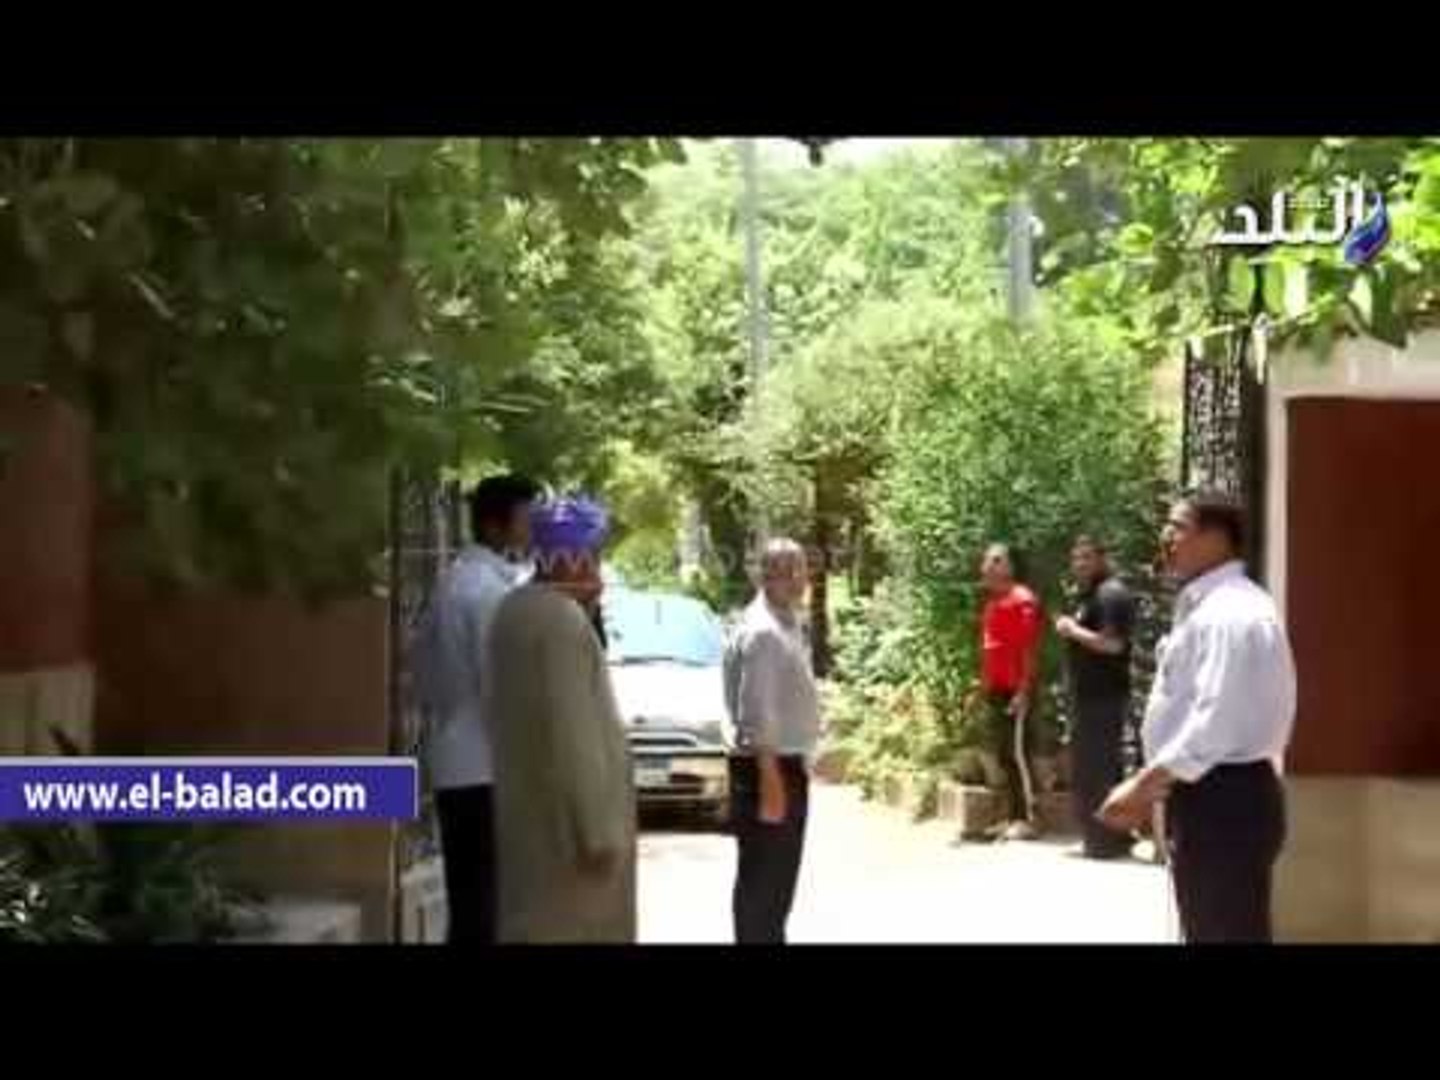 لحظة خروج جثمان "عمر الشريف" من مستشفى بهمن بحلوان - فيديو Dailymotion